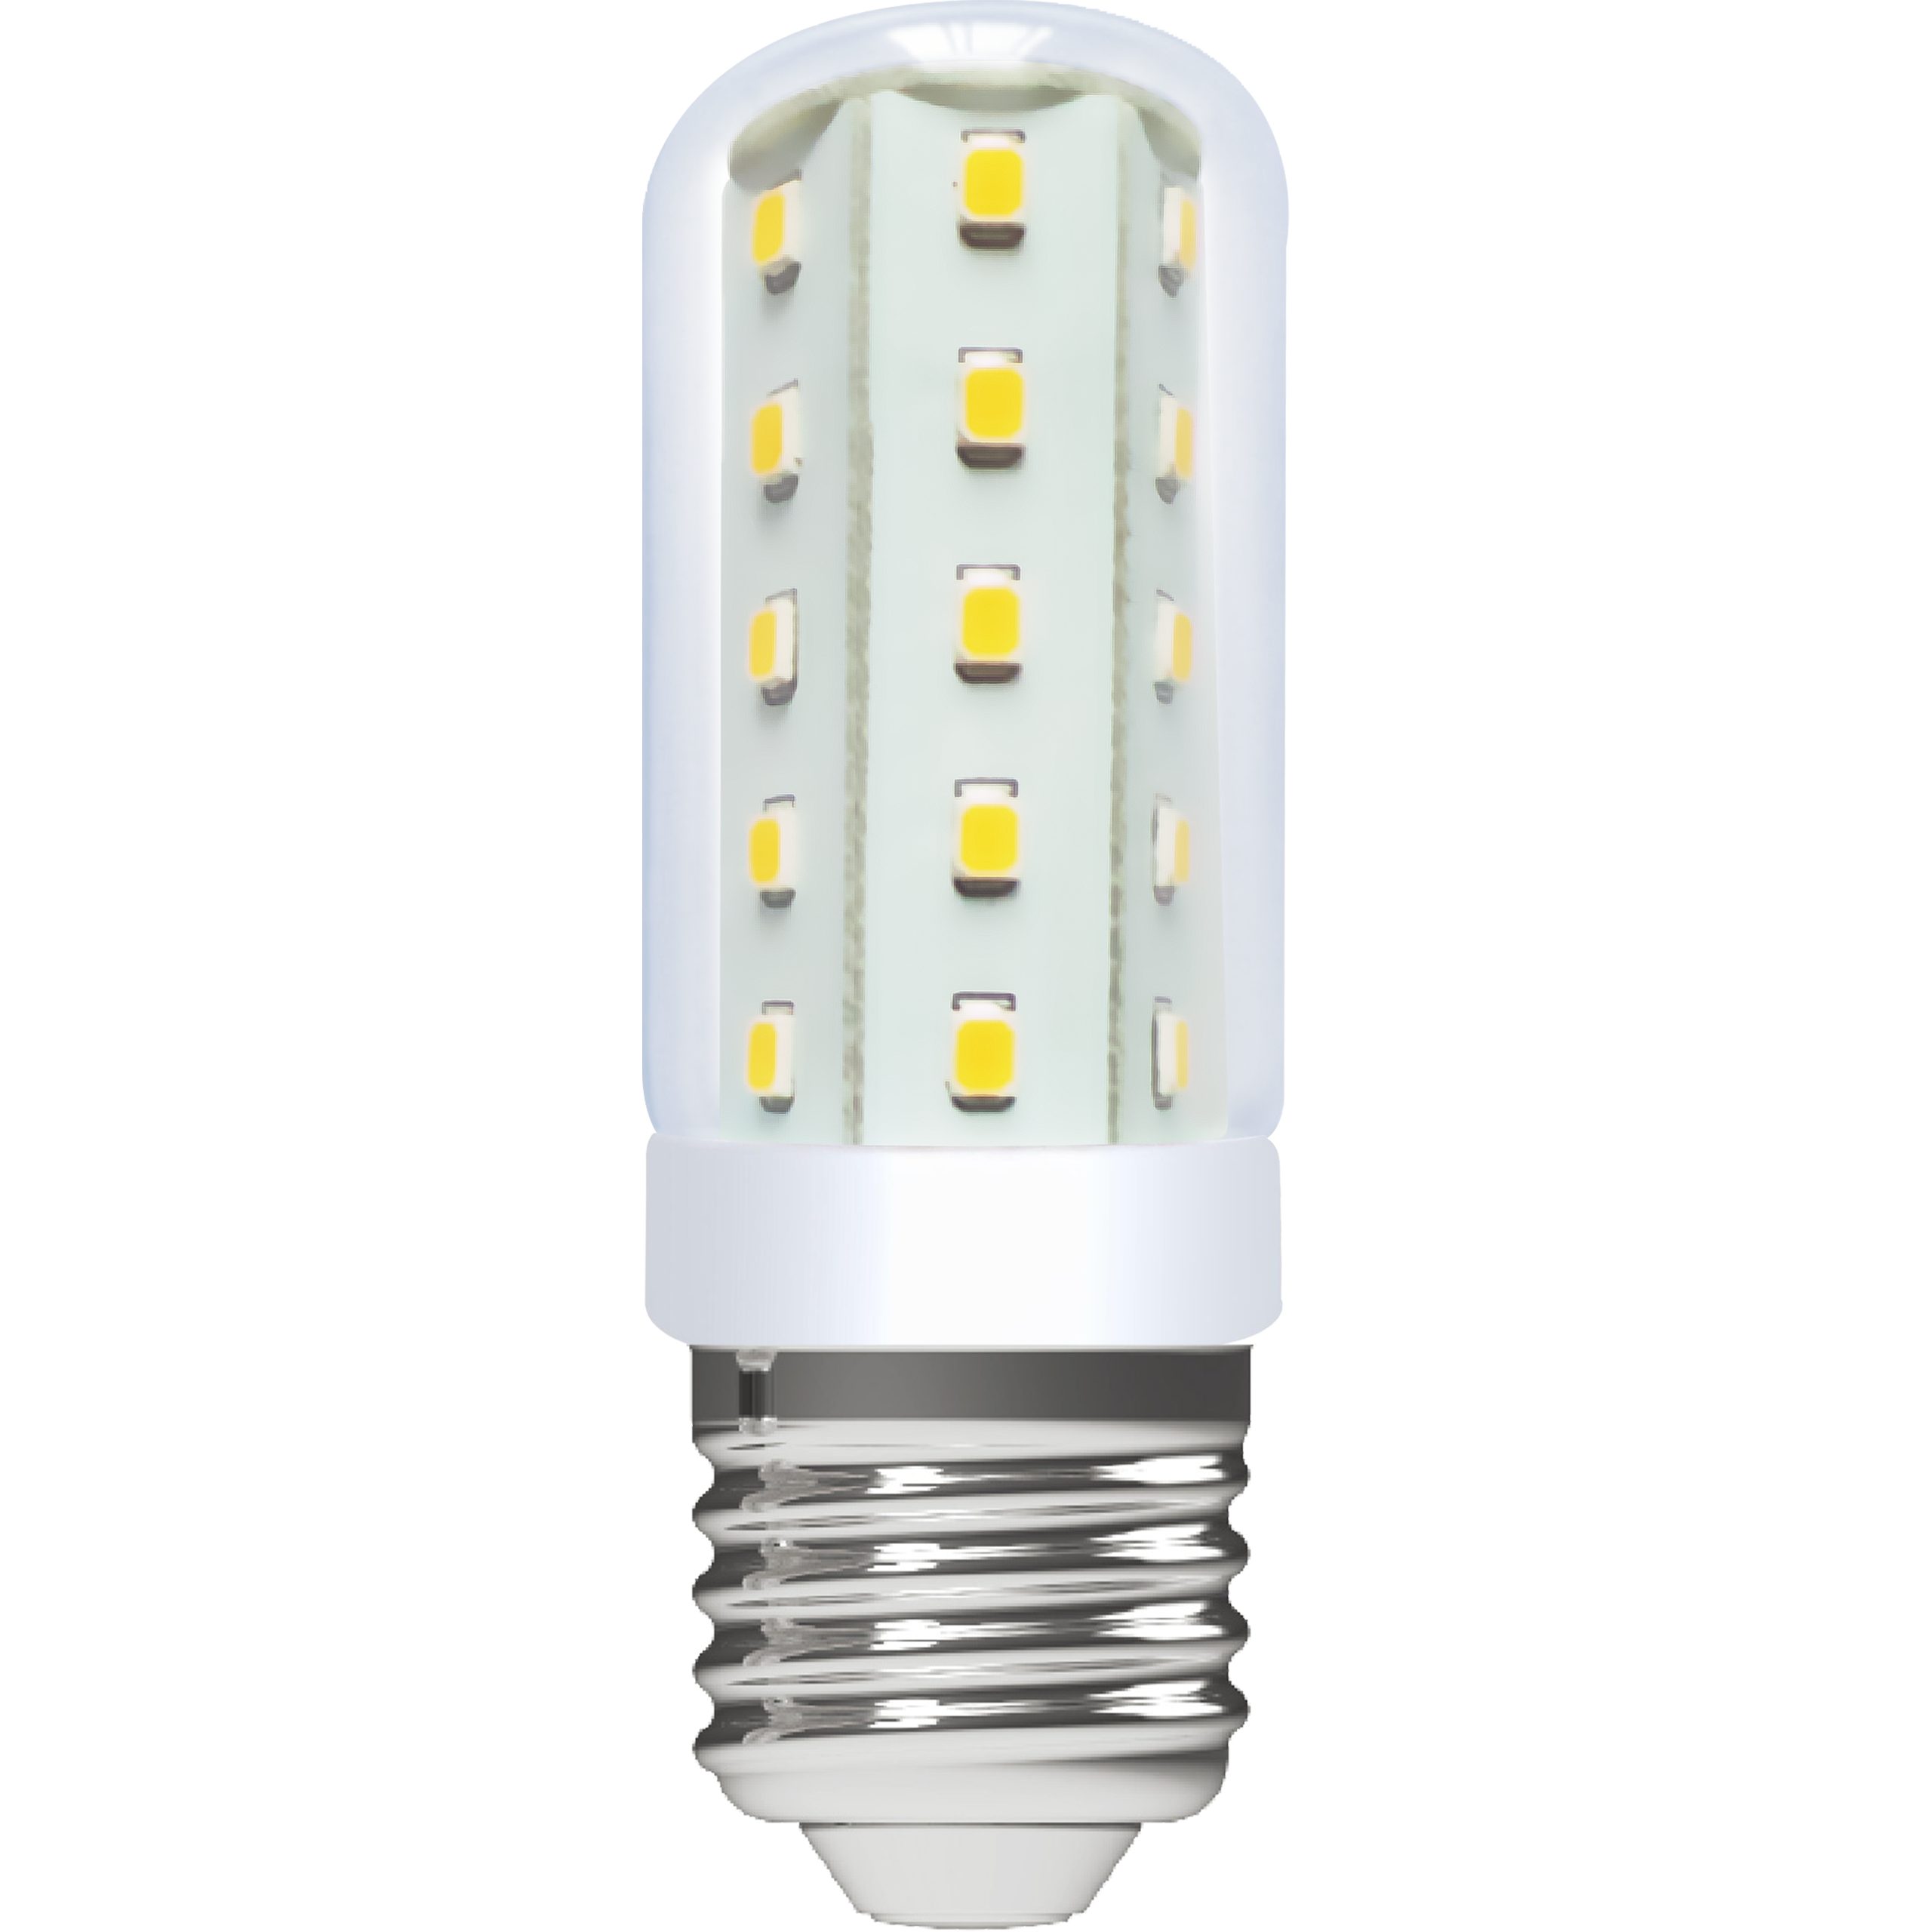 LED's light LED-Leuchtmittel 0620201 LED Kapsel, E27, E27 4W warmweiß Klar CRI97 für beste Farbwiedergabe T30